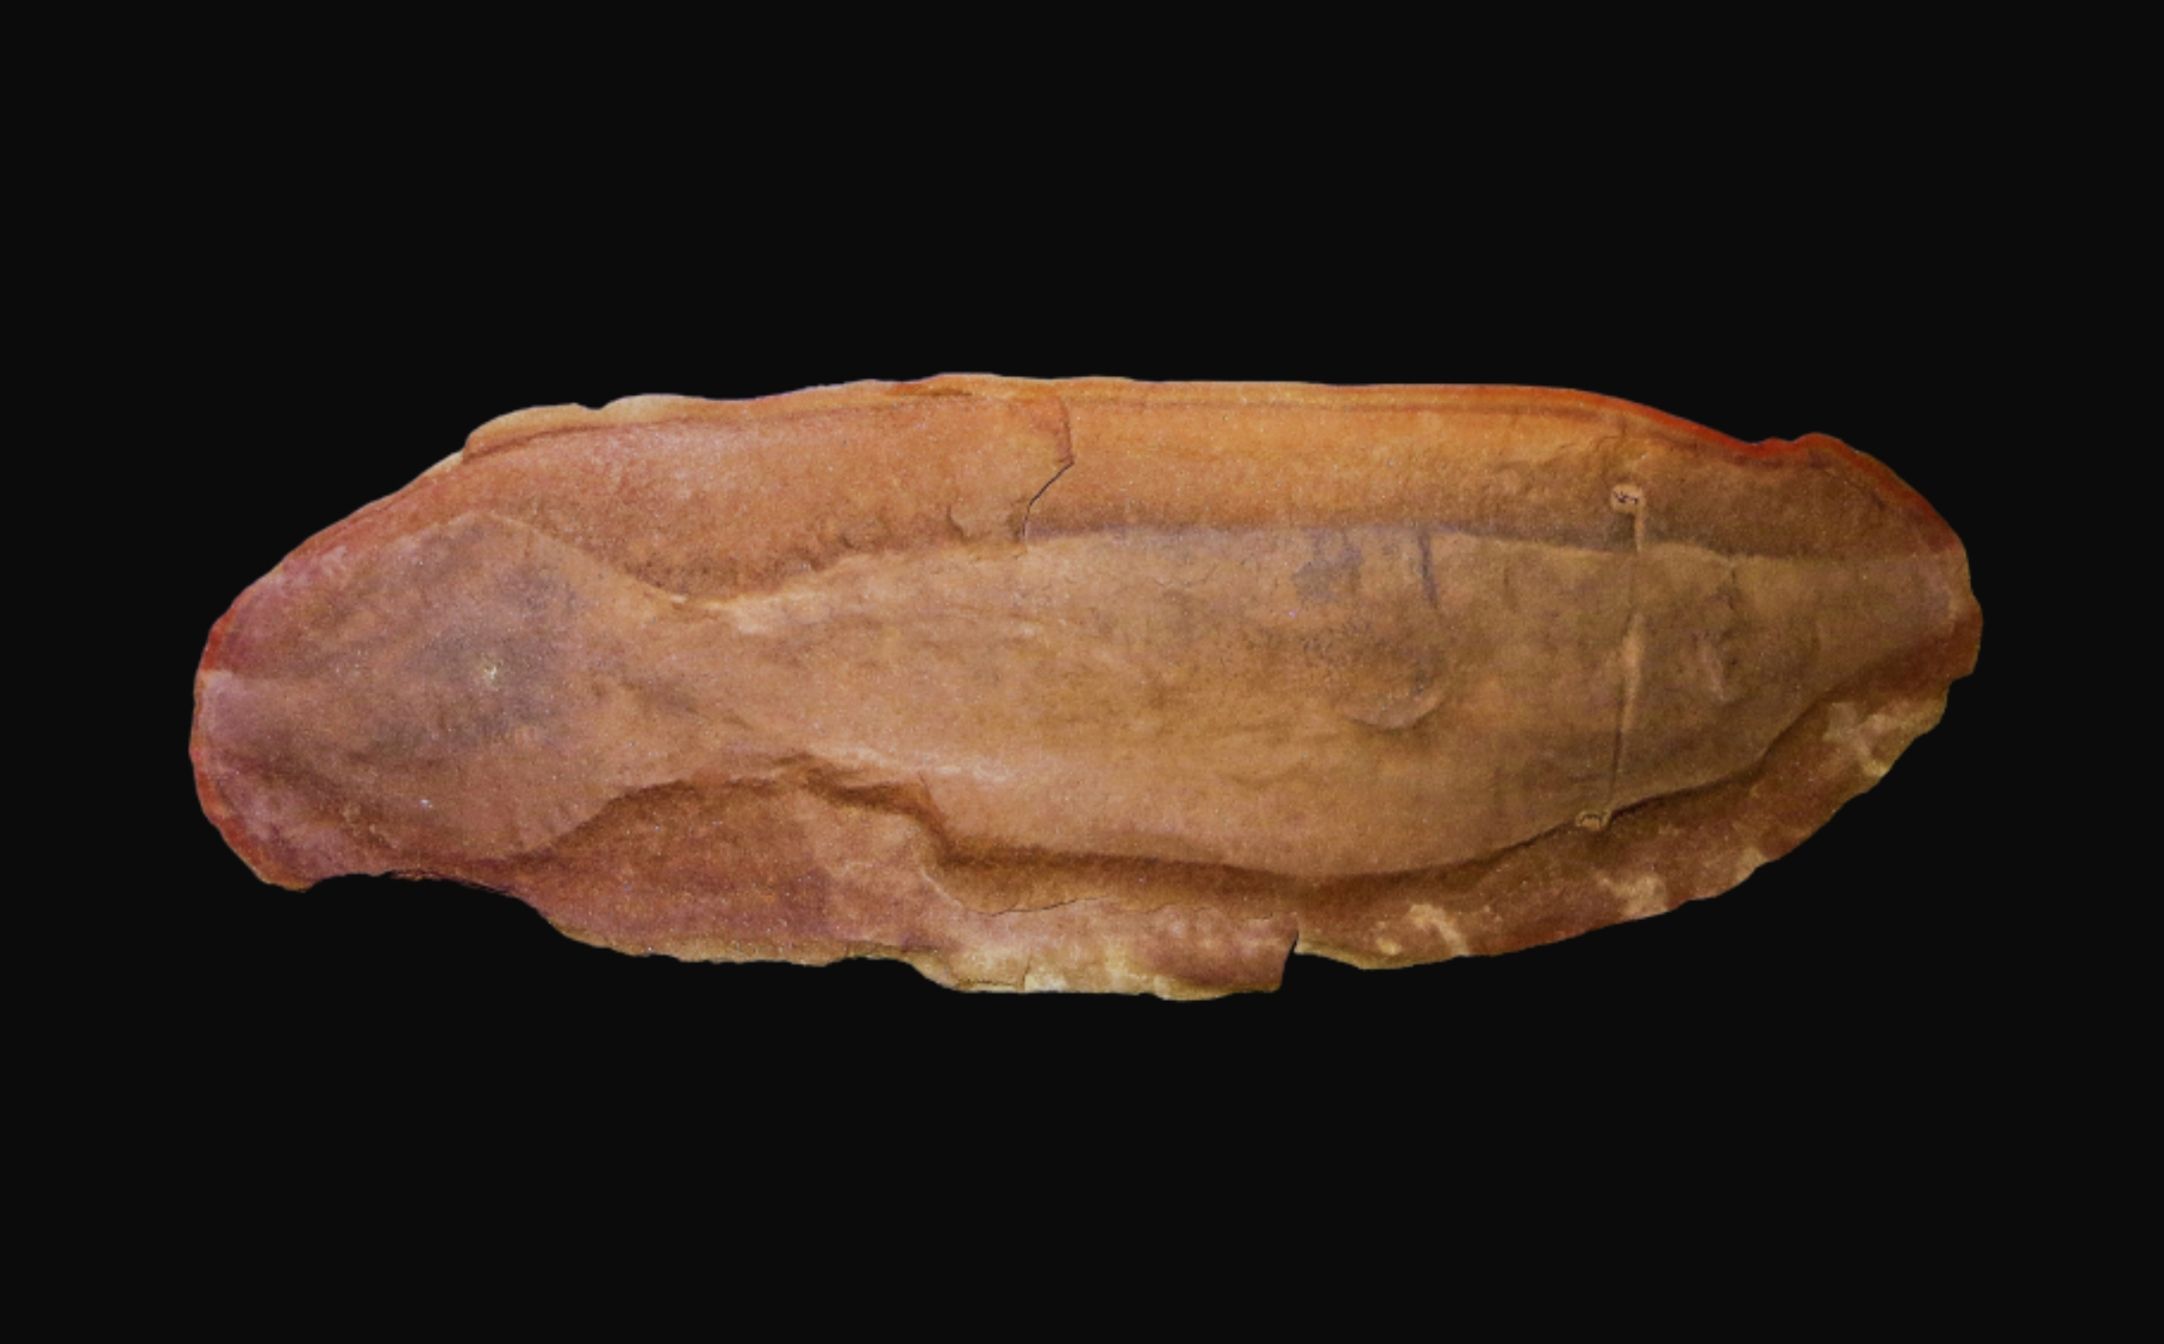 ਟੂਲੀ ਮੌਨਸਟਰ - ਨੀਲੇ 1 ਤੋਂ ਇੱਕ ਰਹੱਸਮਈ ਪ੍ਰਾਗਇਤਿਹਾਸਕ ਪ੍ਰਾਣੀ